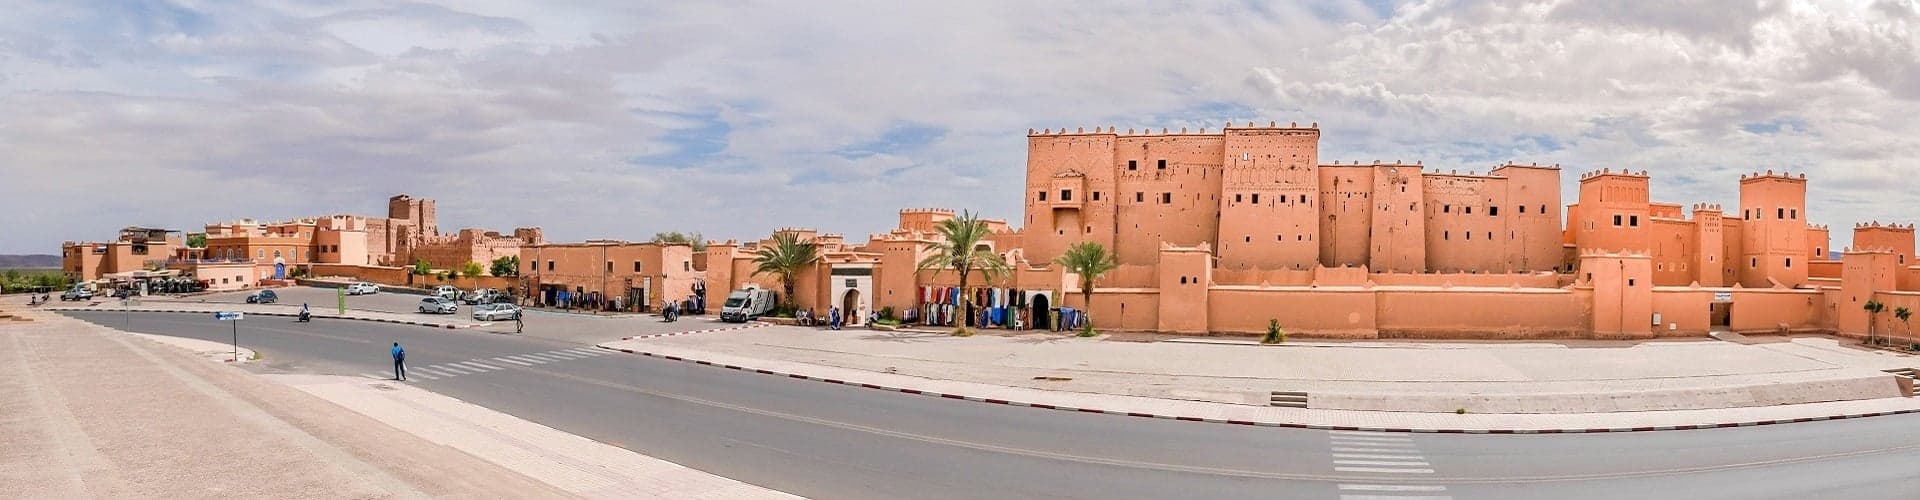 Ouarzazate Skyline